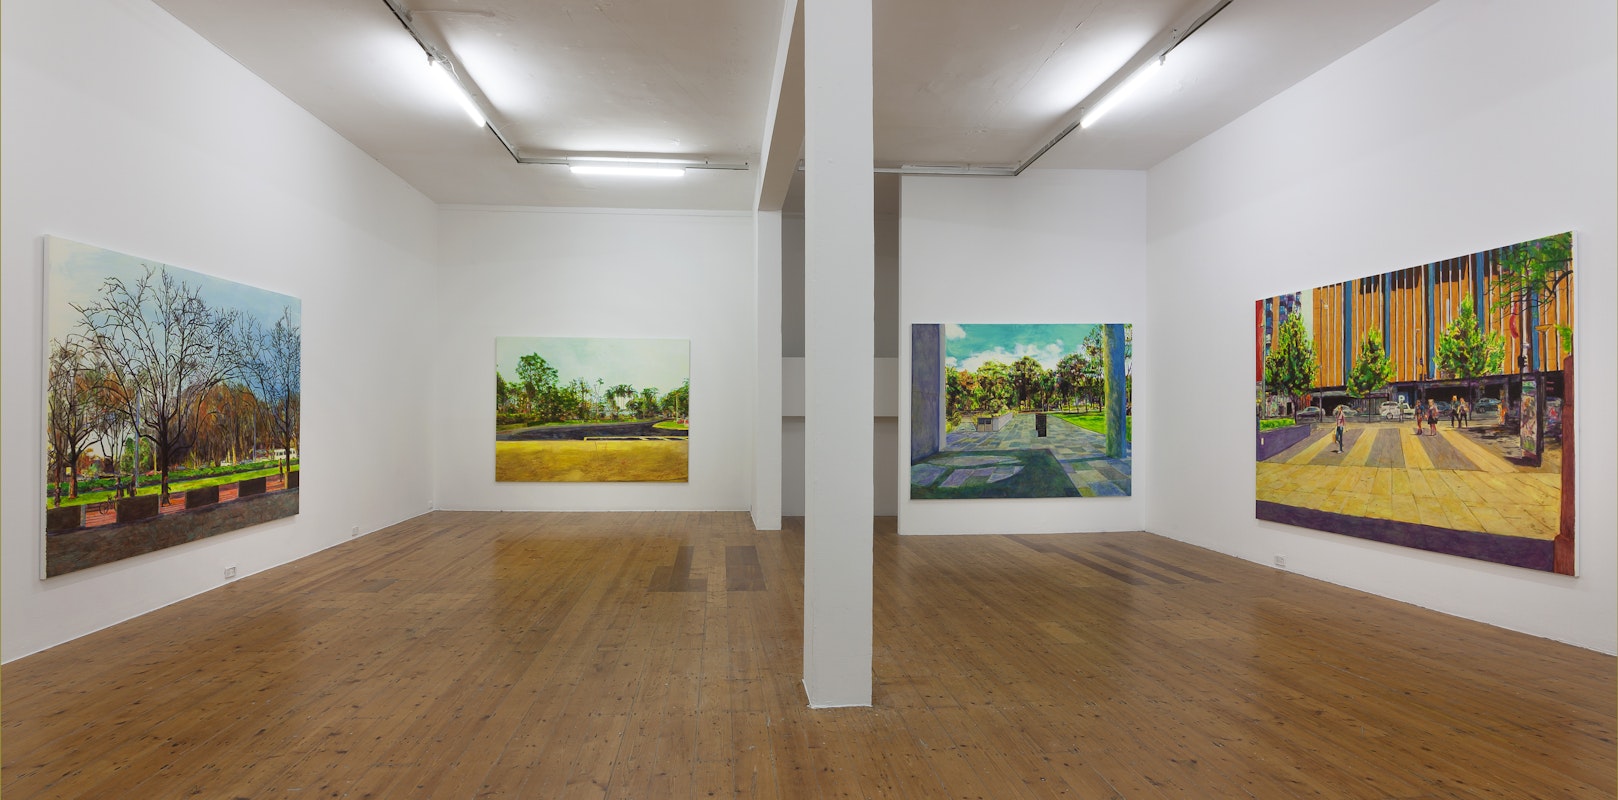 The Scene, Geoff Newton, 2014, Installation View